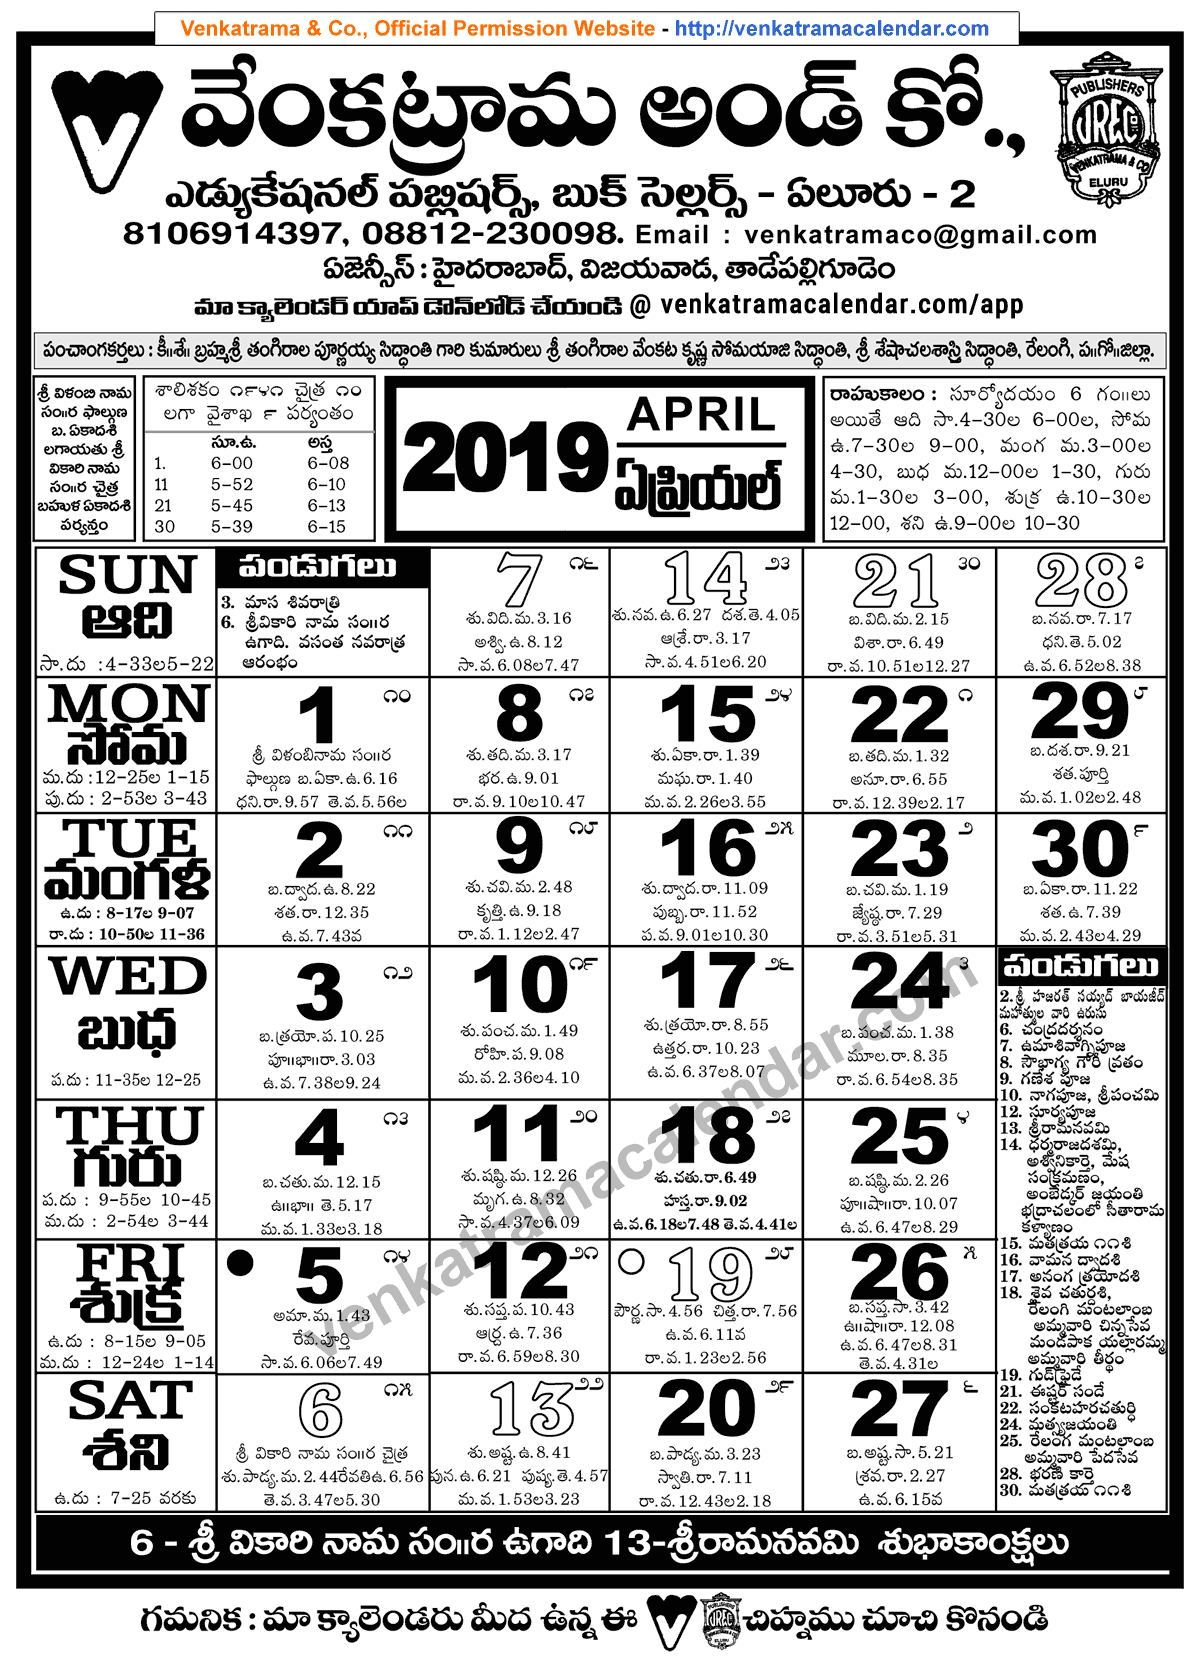 venkatrama-co-2019-april-telugu-calendar